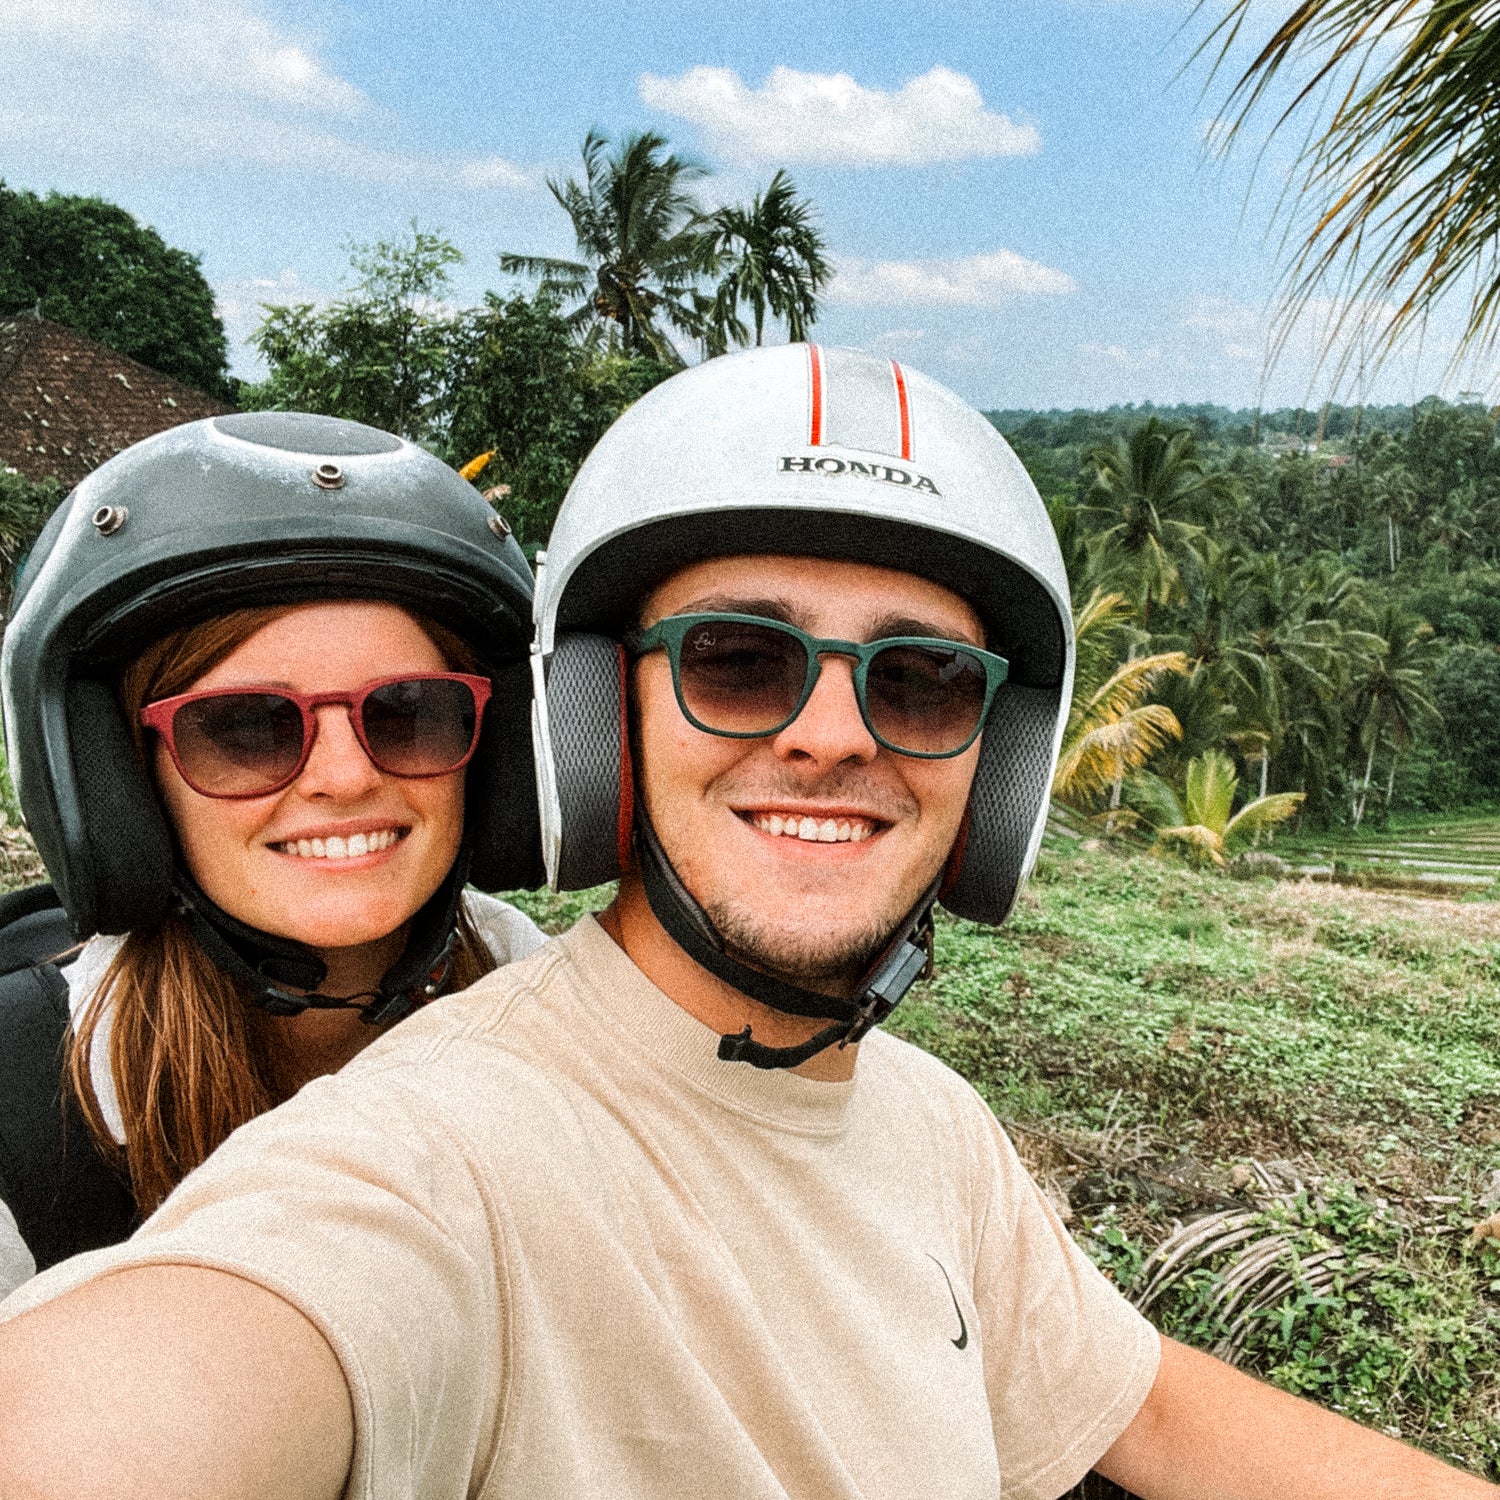 Twee personen, die waarschijnlijk op een scooter zitten, maken een selfie op Bali. Beide personen hebben een zonnebril op, de een een rode, de ander een groene.